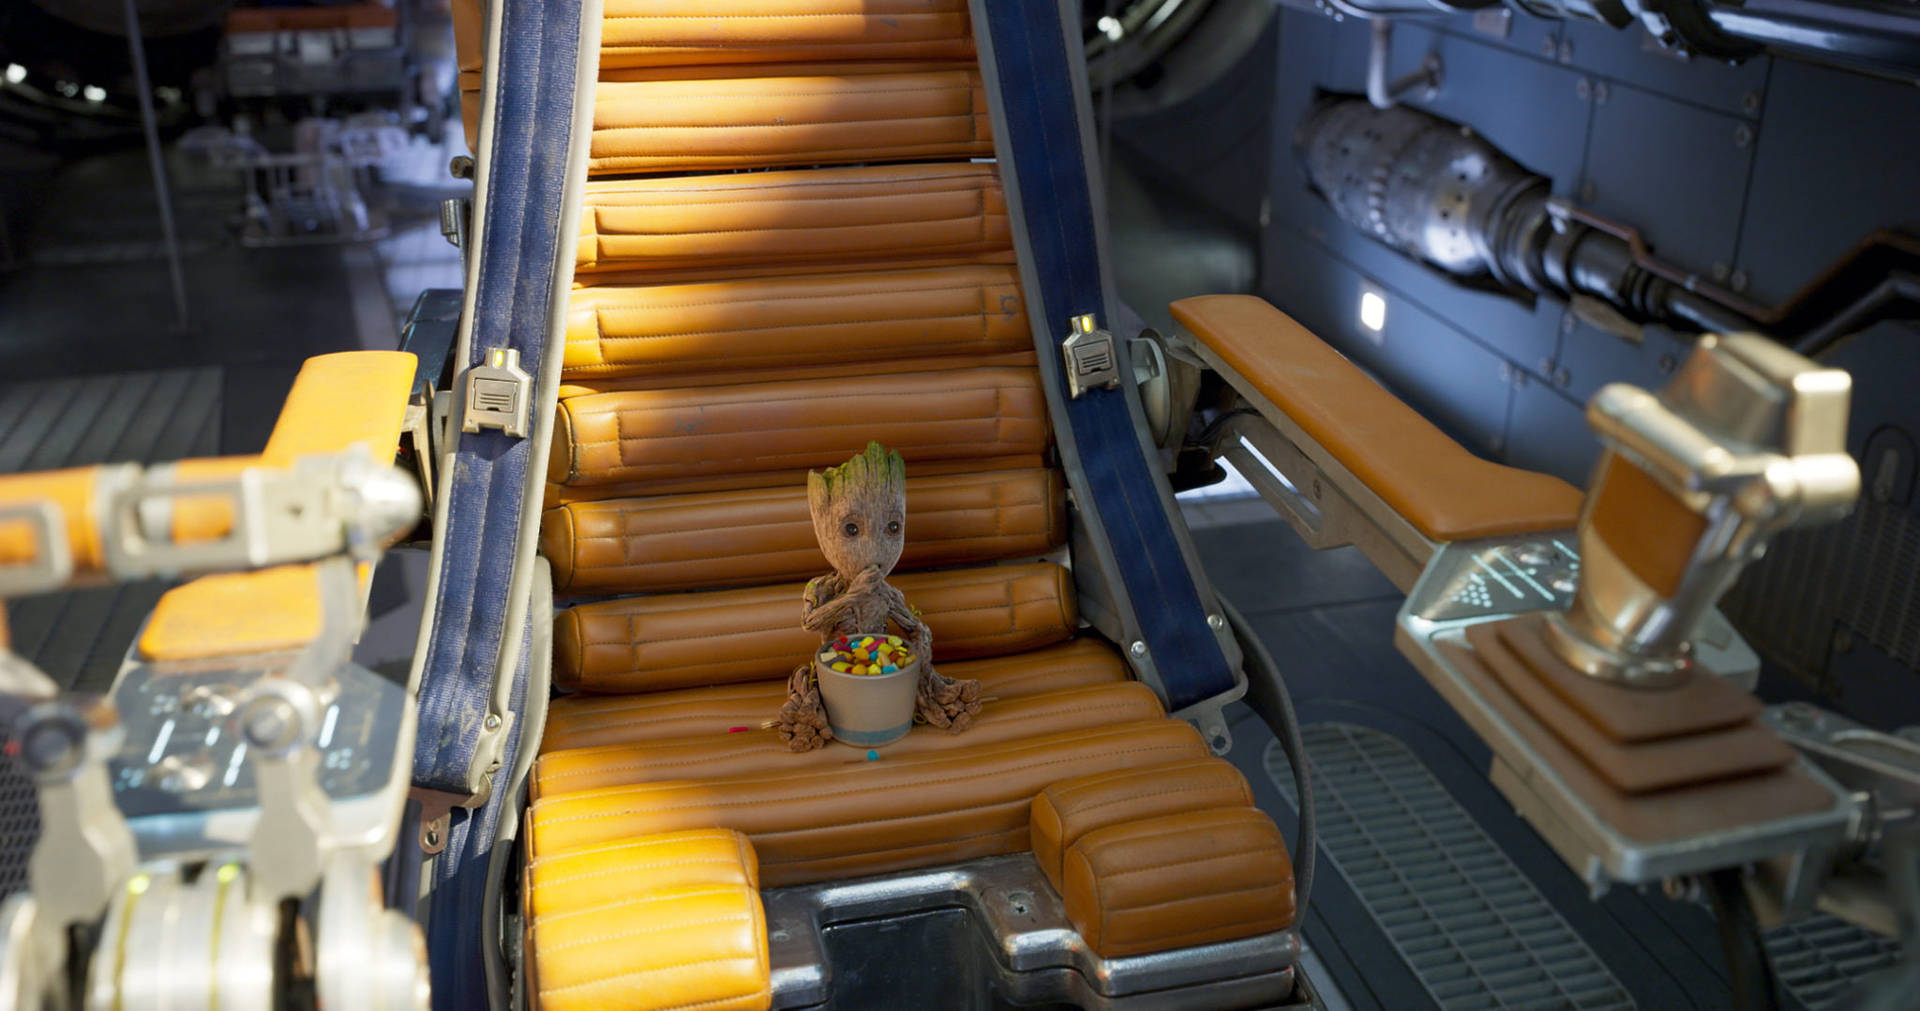 Groot Eating In Spaceship Background